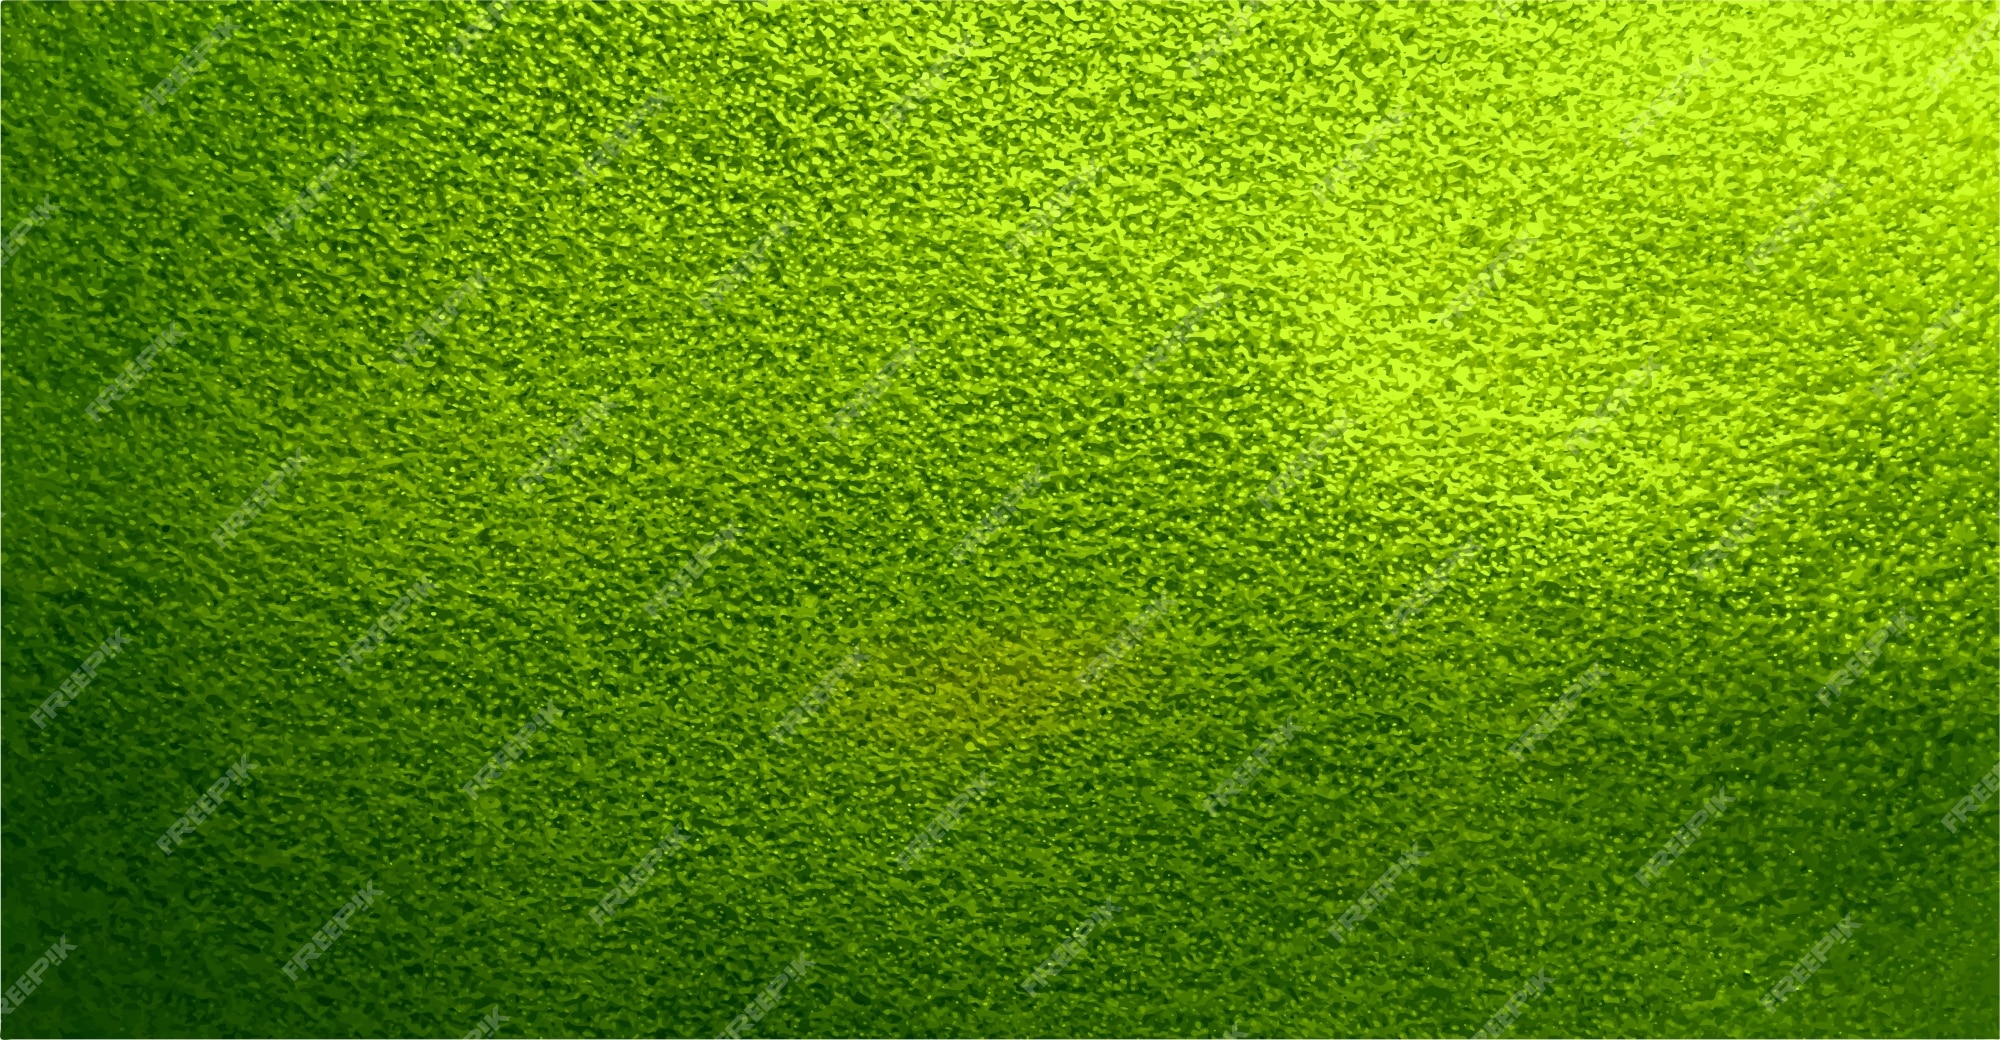 Một hình nền màu xanh lá đẹp sẽ tạo ra cảm giác yên bình và thanh thản. Các tông màu xanh là màu sắc của sự sống, của thiên nhiên và giúp bạn thư giãn sau một ngày làm việc căng thẳng. Hình nền này được thiết kế tinh tế và độc đáo, sẽ mang đến cho bạn nơi nghỉ dưỡng lý tưởng trên máy tính của mình.